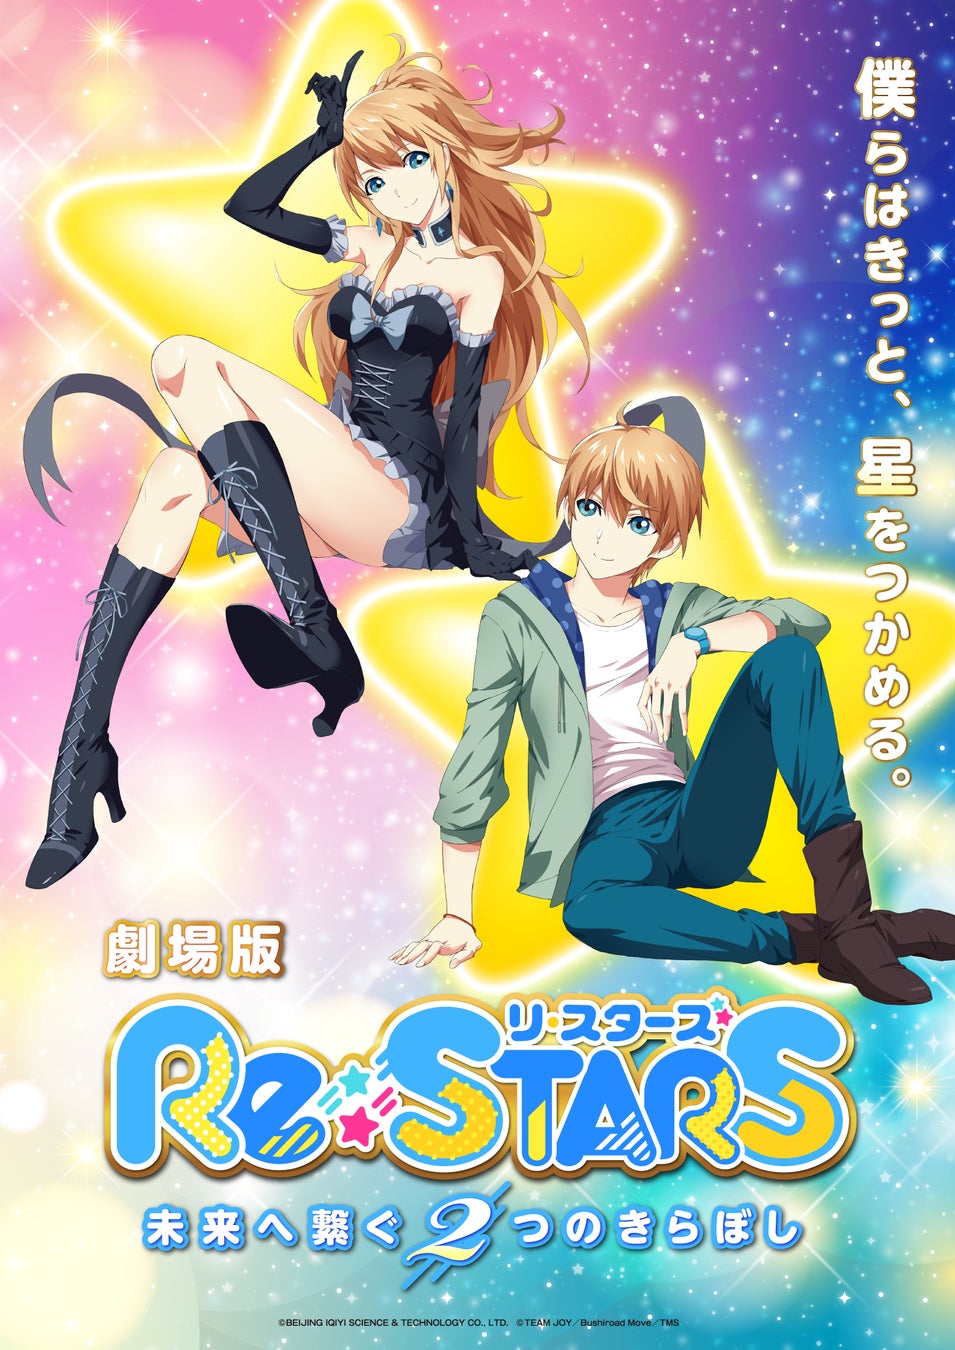 劇場版『Re:STARS 〜未来へ繋ぐ2つのきらぼし〜』7月21日(金)劇場公開決定！TVアニメ『Re:STARS』 は、第5話あらすじ&先行カット公開！